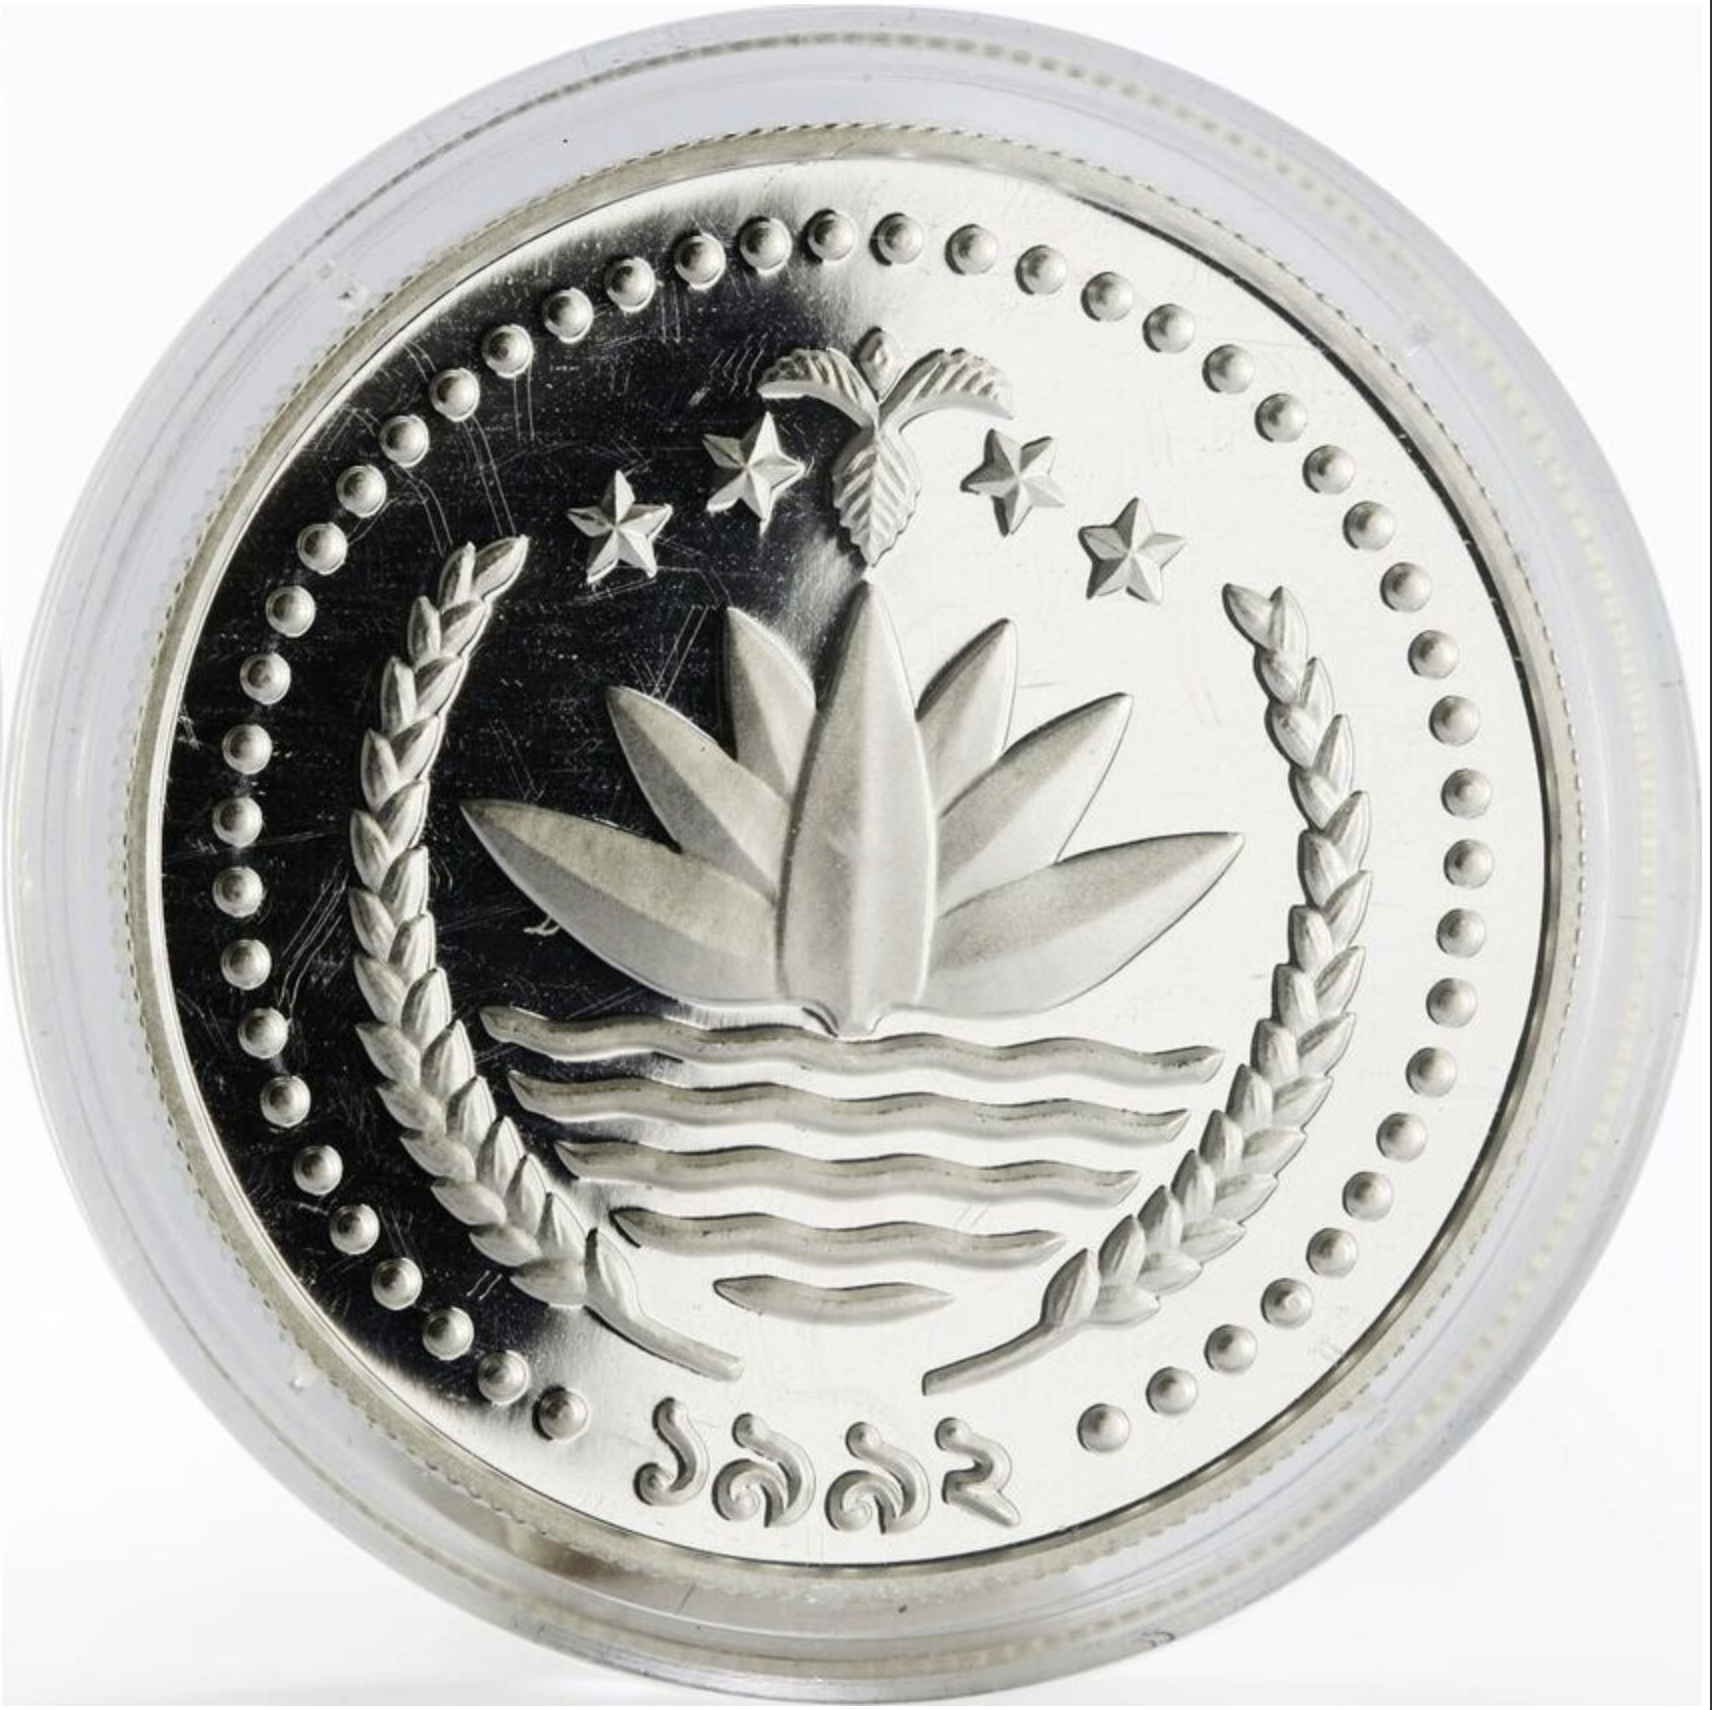 Bangladesh 1 taka 25th Olympic Games Barcelona PF70 NGC silver coin 1992